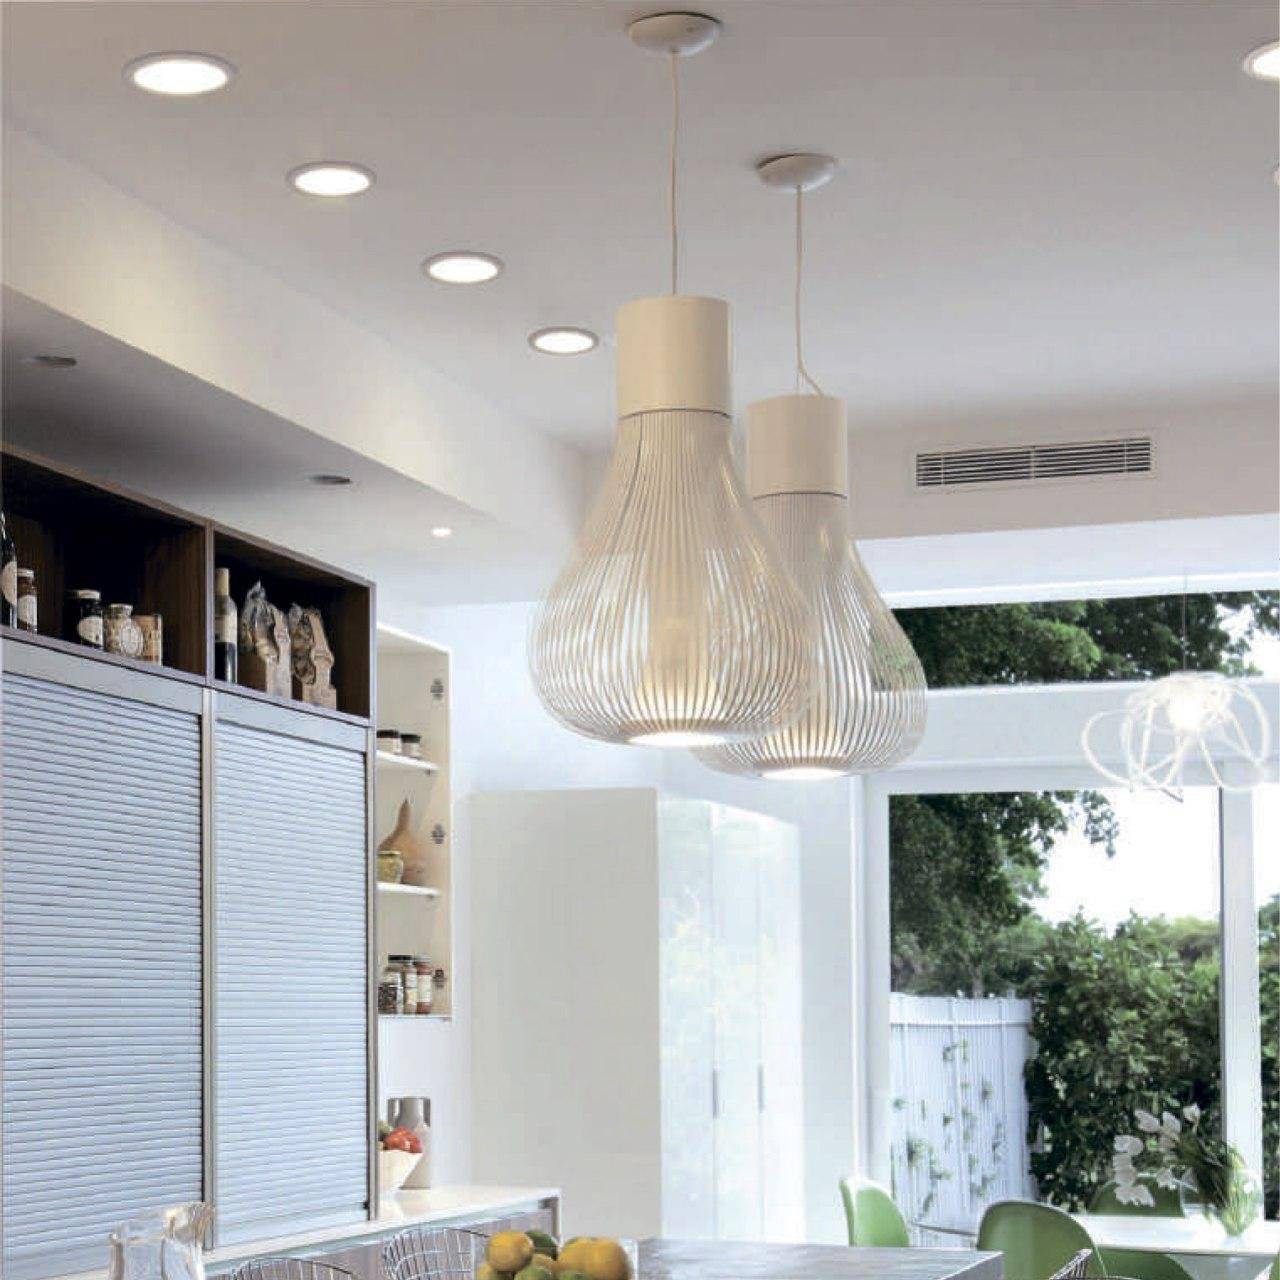 Как подобрать красивое освещение на кухню с натяжным потолом?